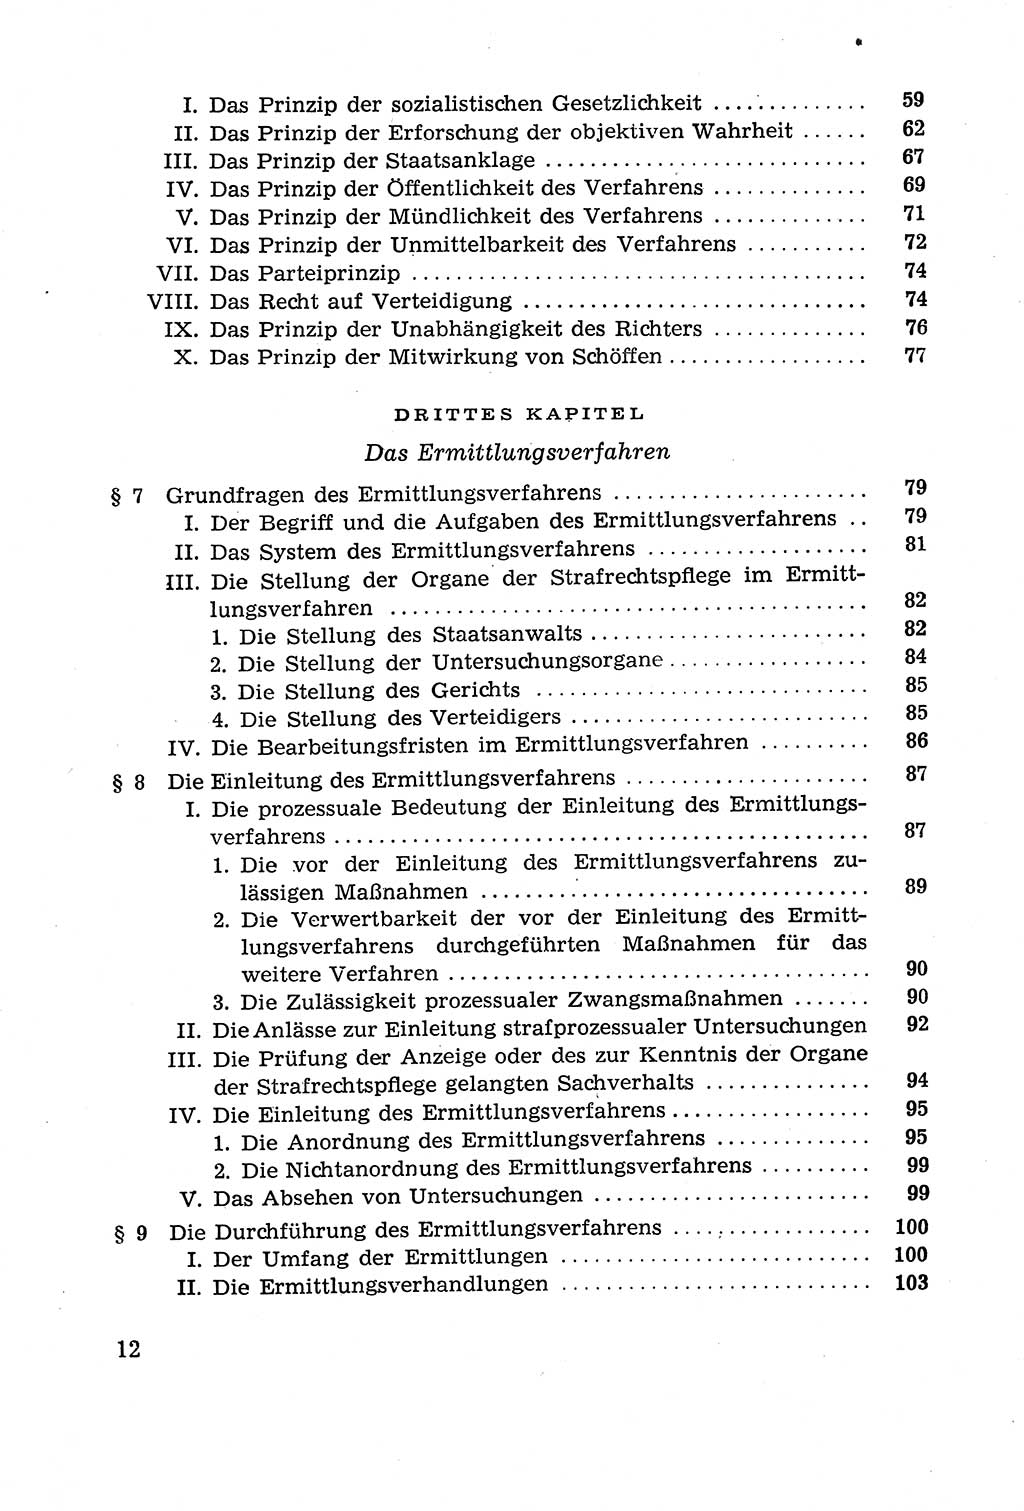 Leitfaden des Strafprozeßrechts der Deutschen Demokratischen Republik (DDR) 1959, Seite 12 (LF StPR DDR 1959, S. 12)